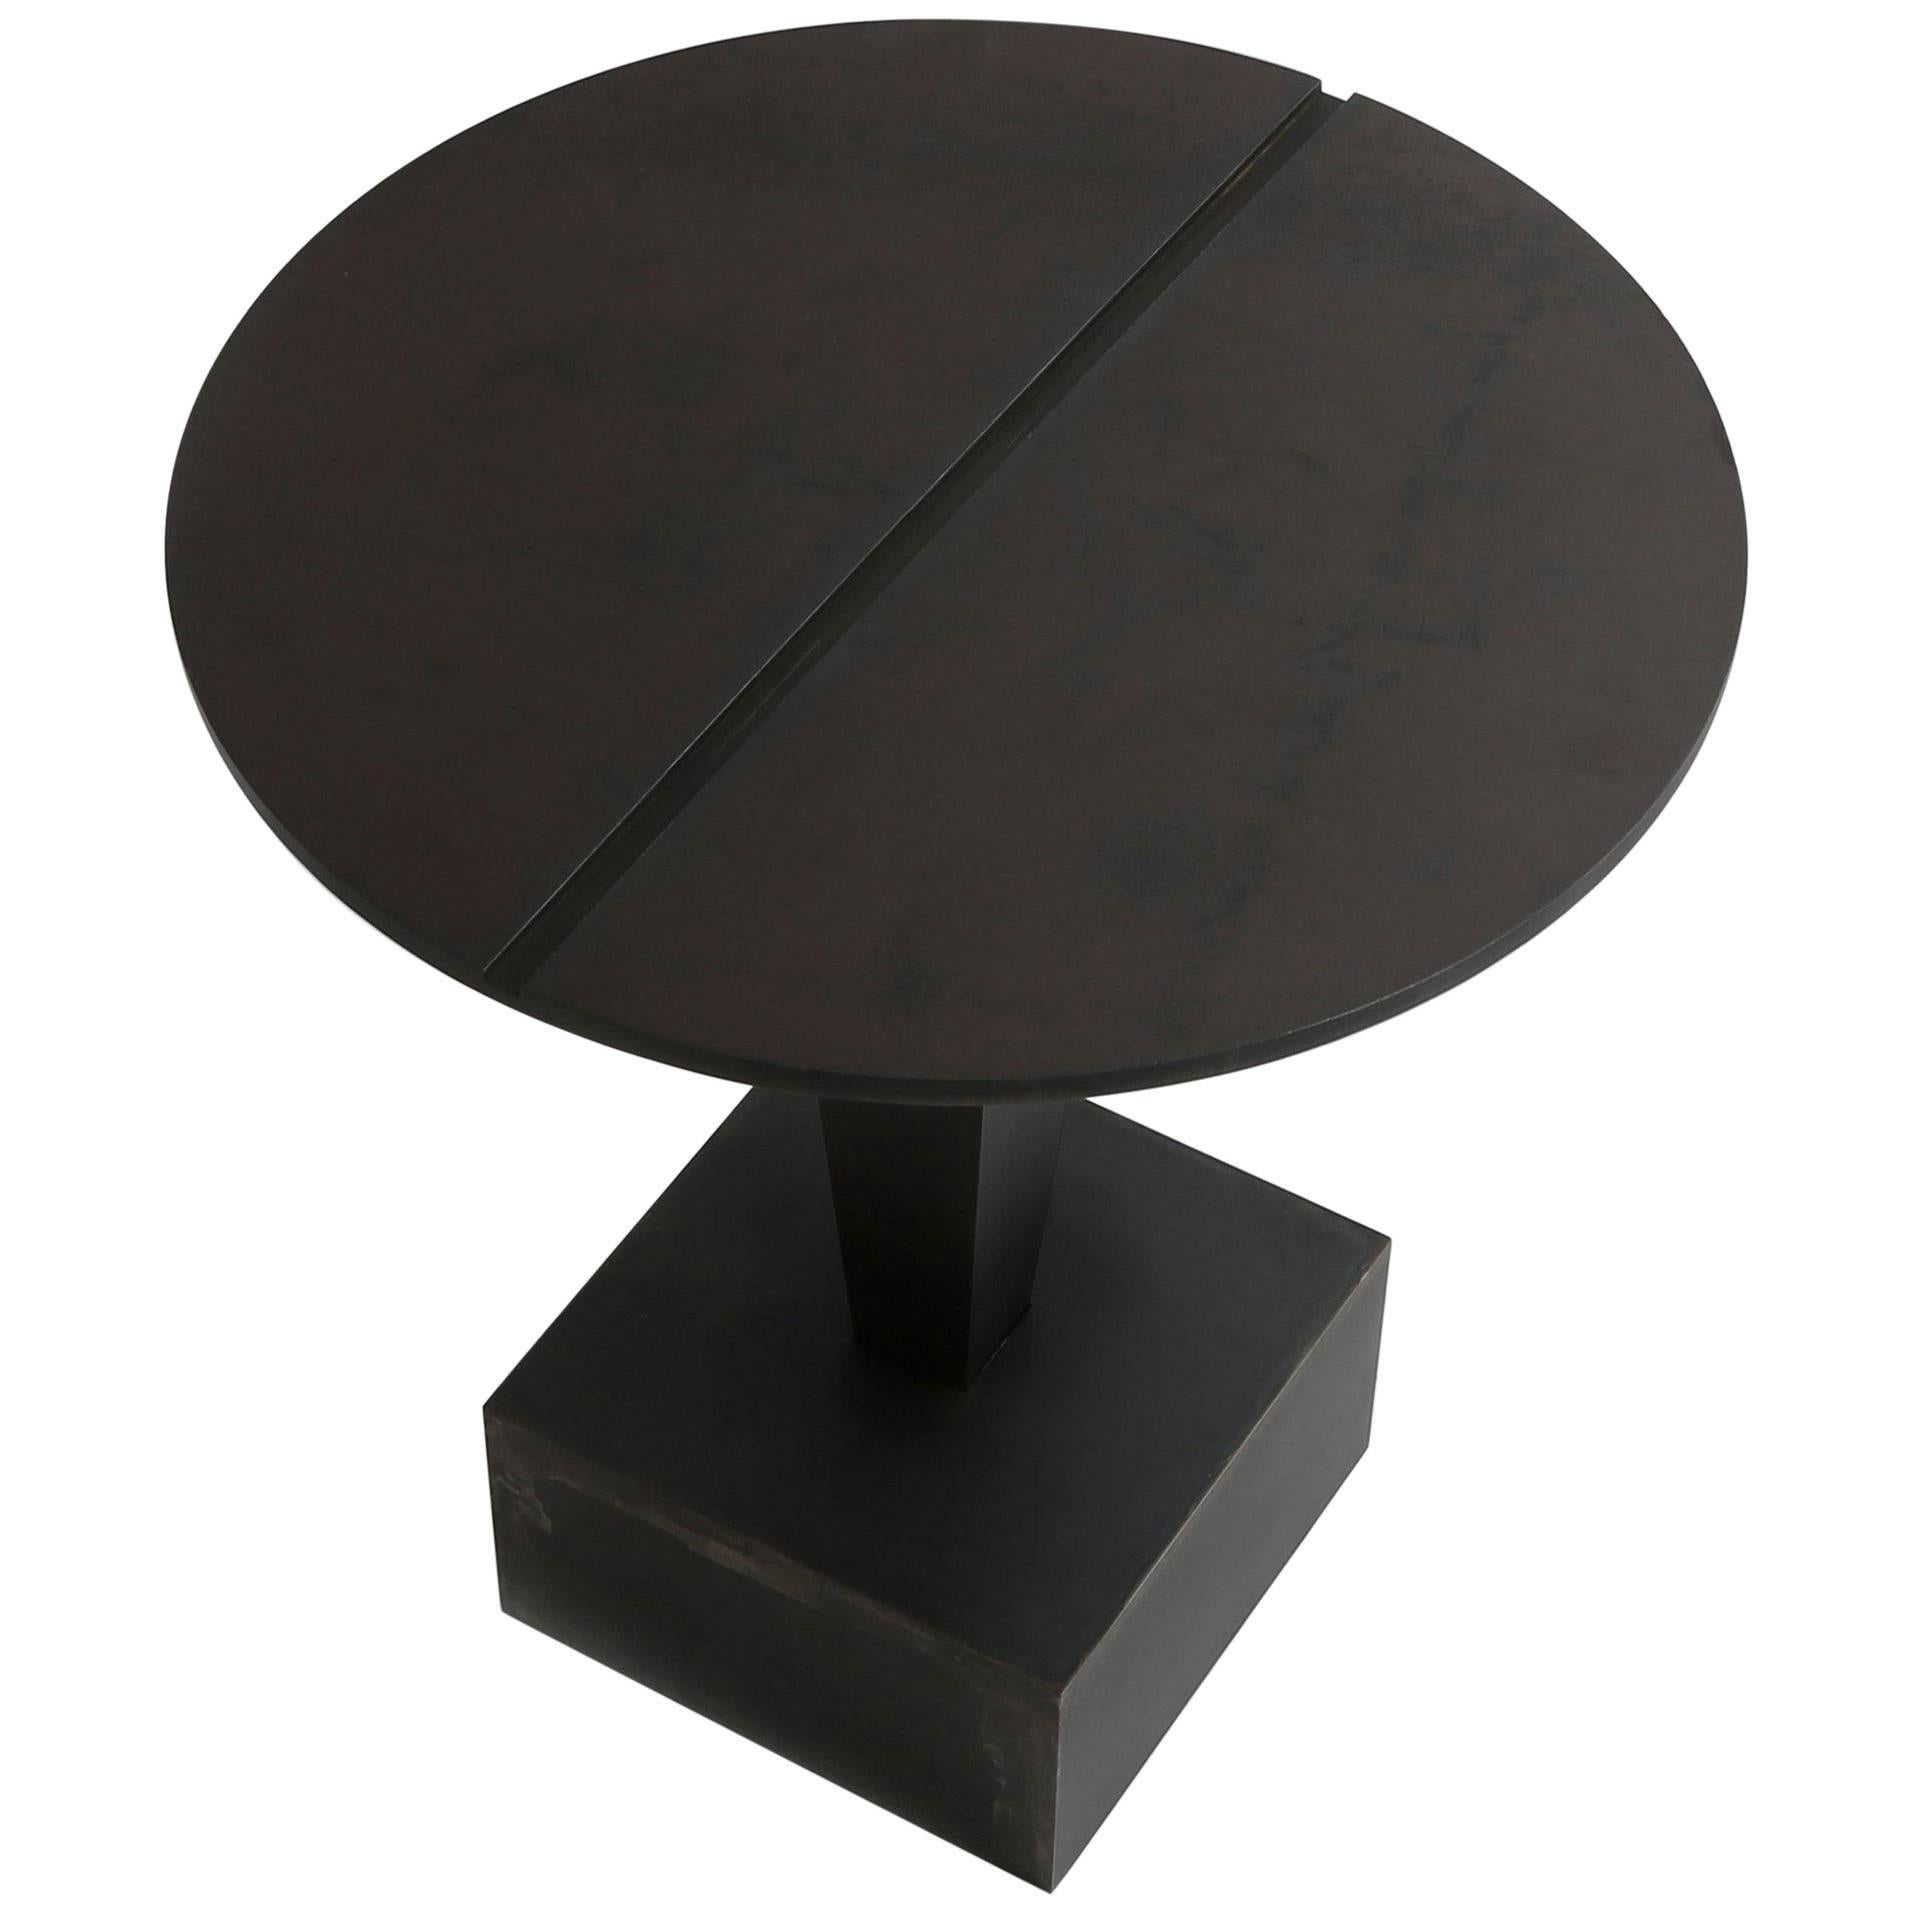 Clou Side Table ‘Metal / Steel or Marble'